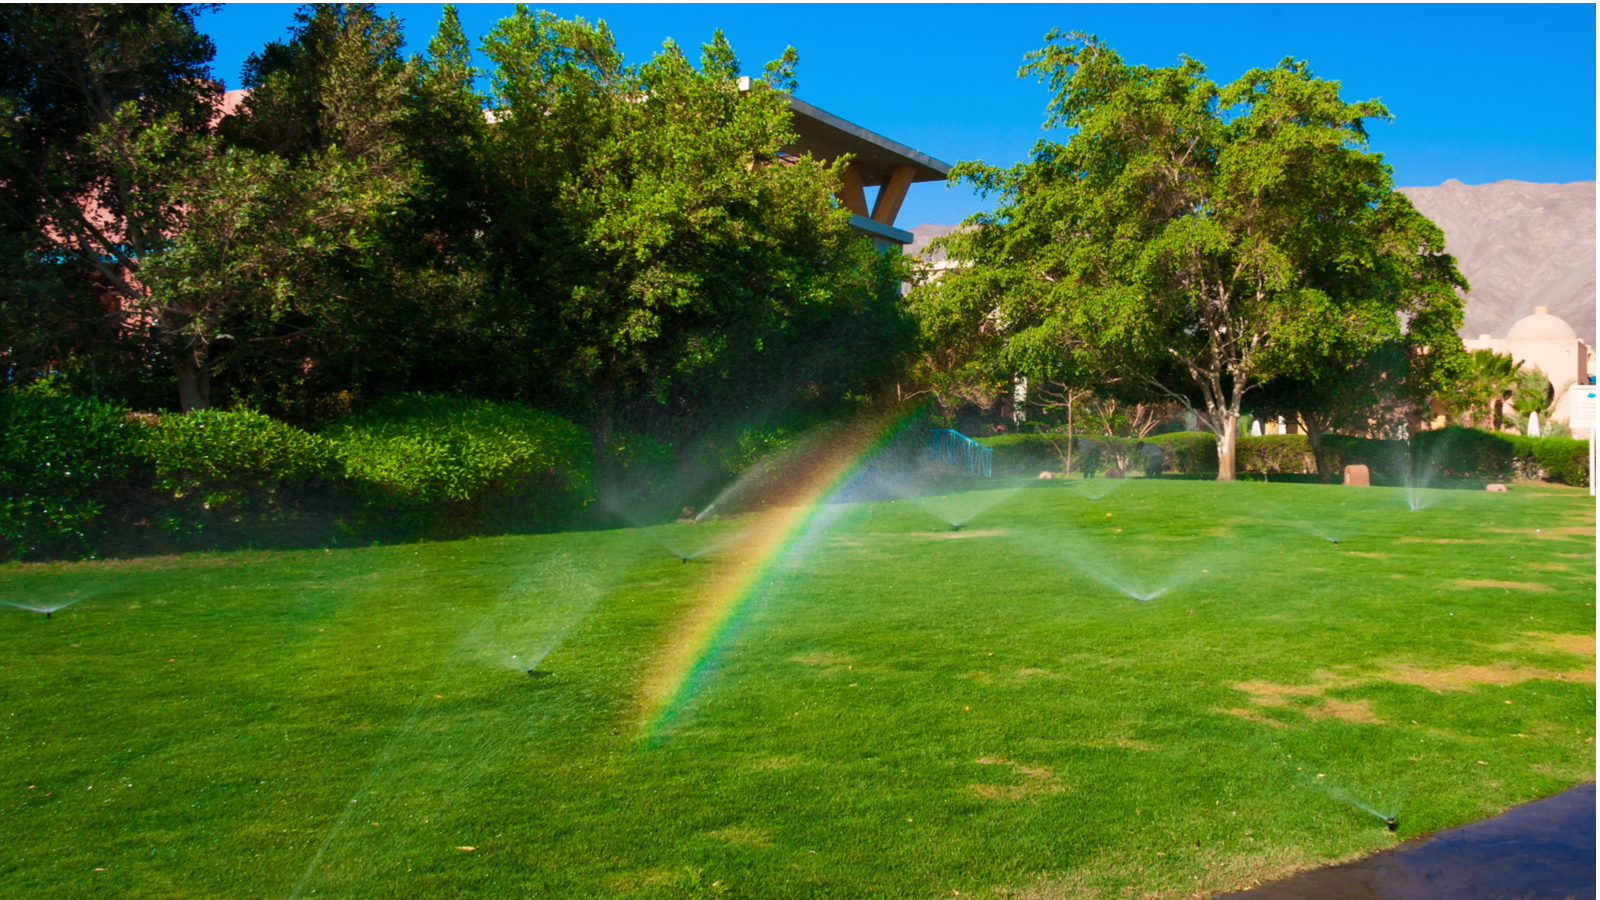 sprinkler-system-startup-Webster Groves-MO | Webster Groves, MO area sprinkler systems | Lawn Sprinklers of St. Louis